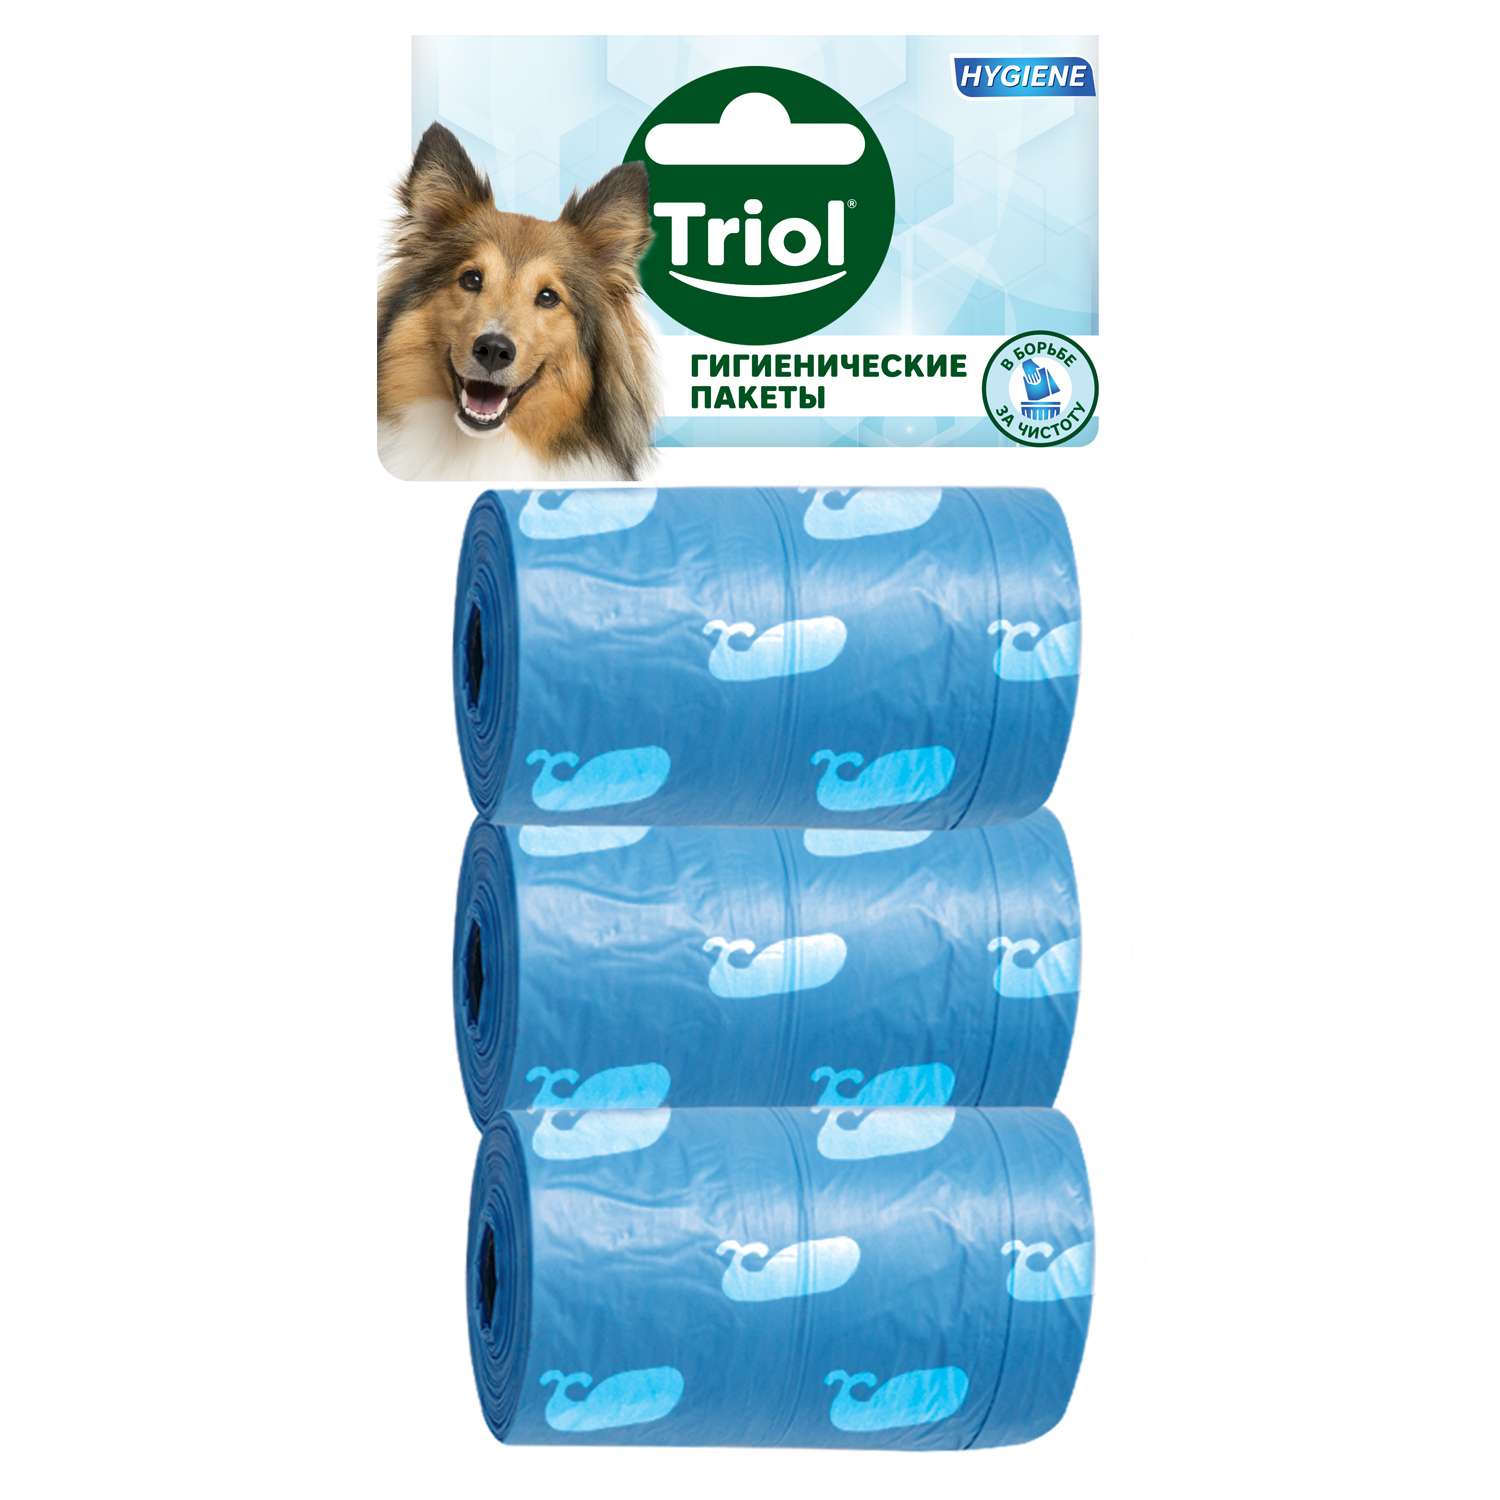 Пакеты гигиенические для собак Triol сменные 3шт 30531005 - фото 2